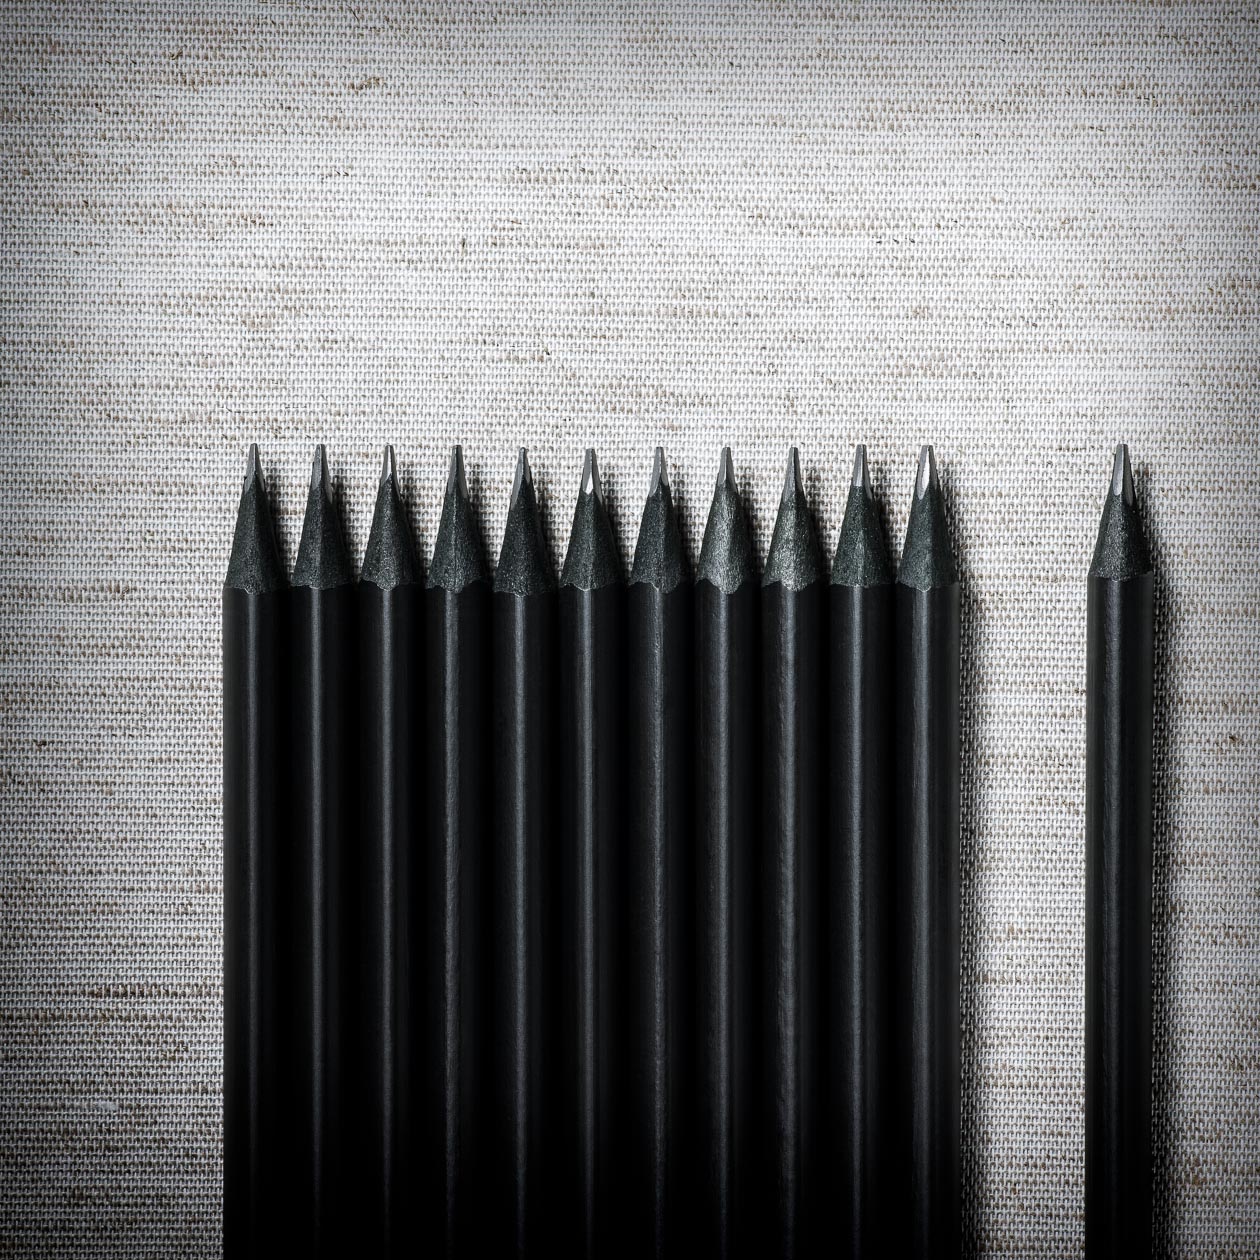 Pencils Concept Lead Leave